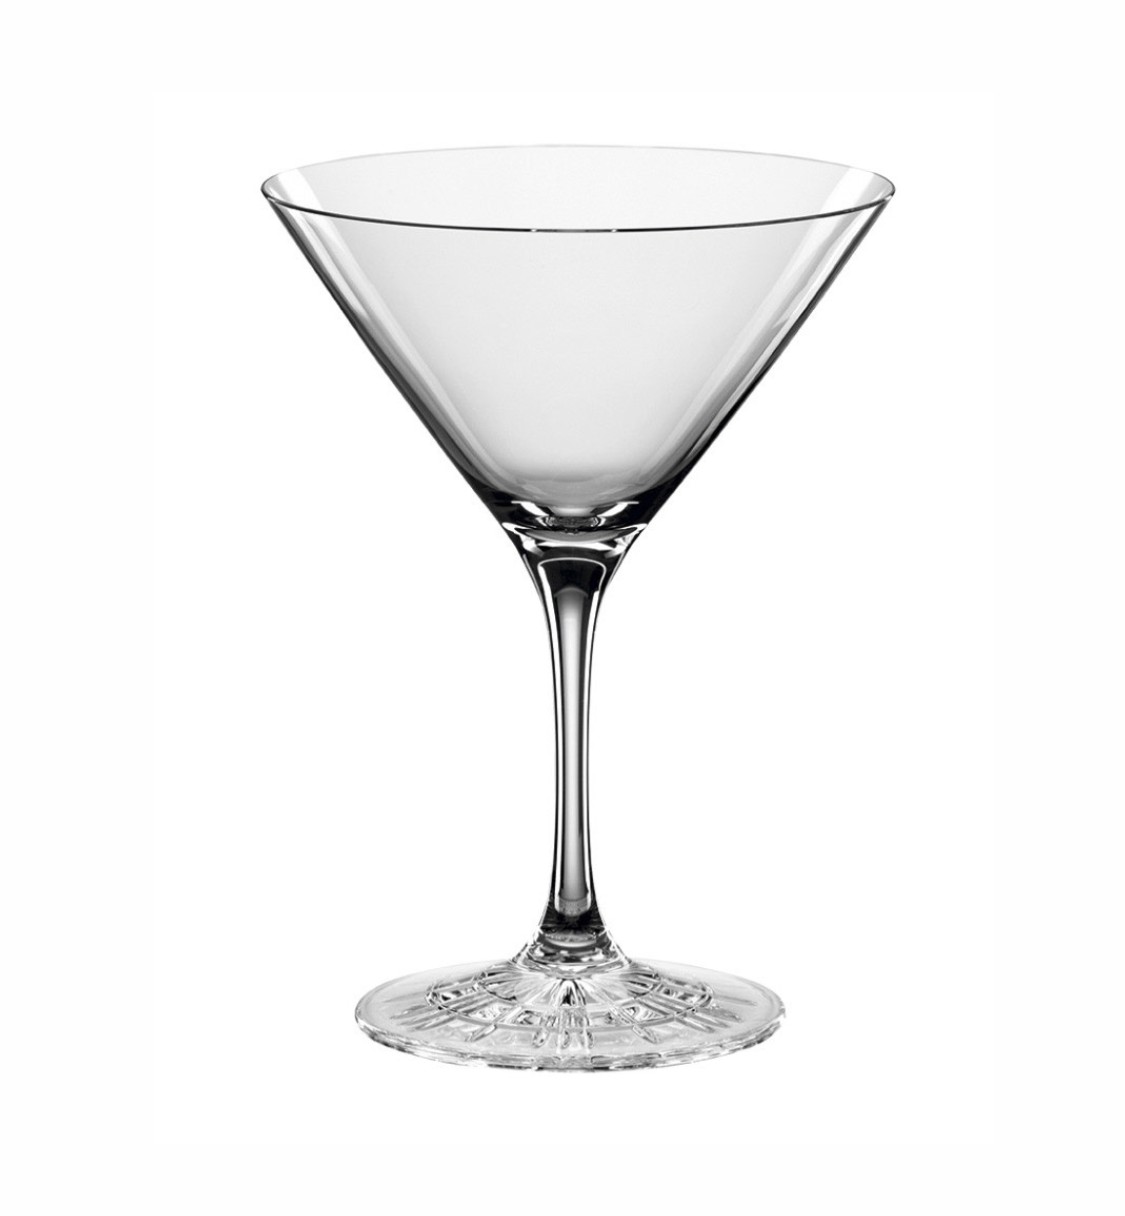 Бокал Spiegelau Perfect Cocktail Glass набор из 4 шт. 165 мл